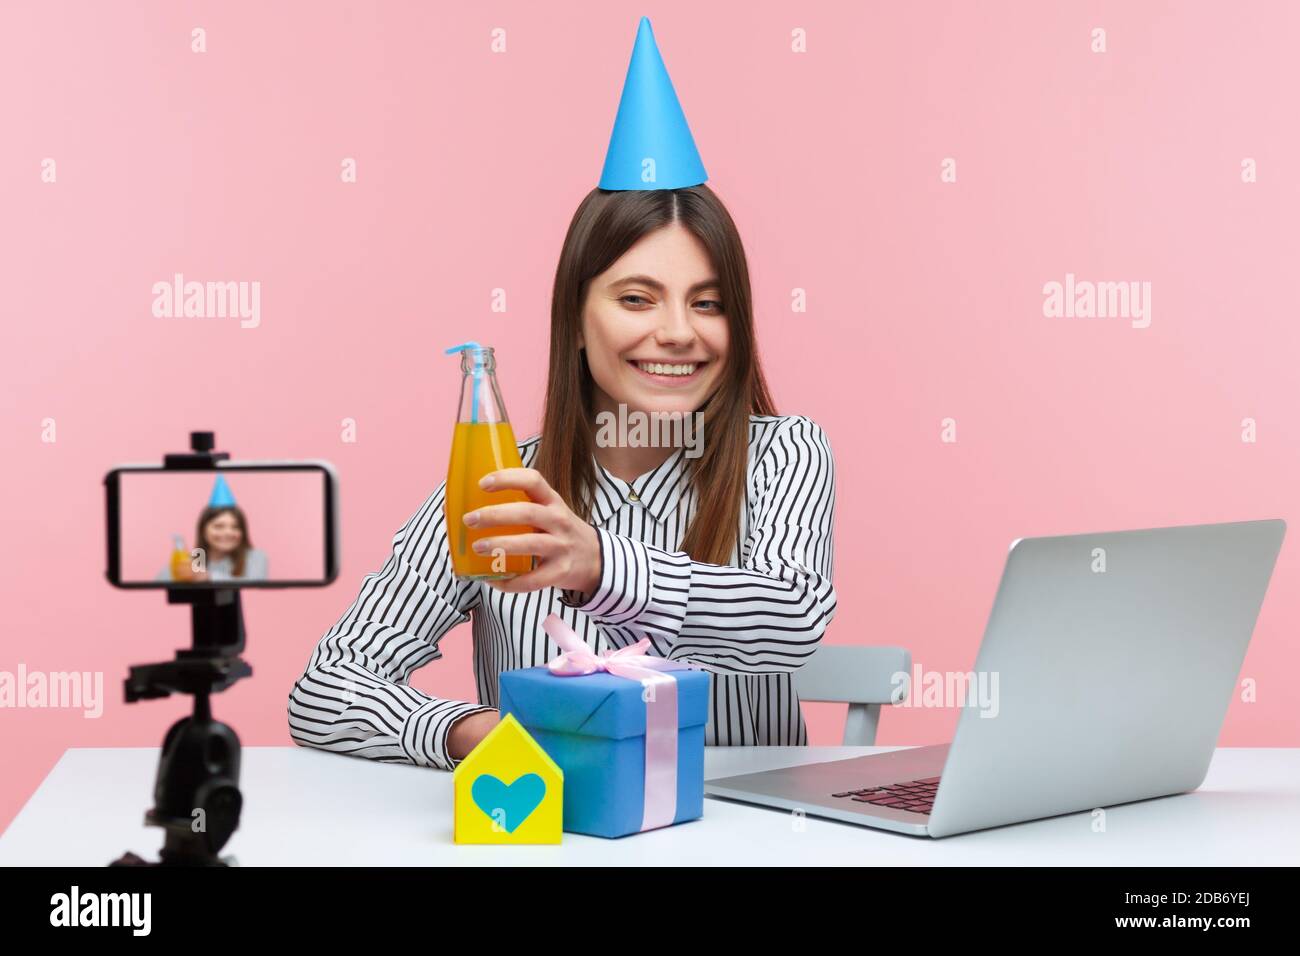 Positive lächelnde Brünette Frau sitzt vor der Kamera in Kegelhut Geburtstag feiern online, Geschenkbox und Papierhaus auf dem Schreibtisch in der Nähe Laptop. Stockfoto